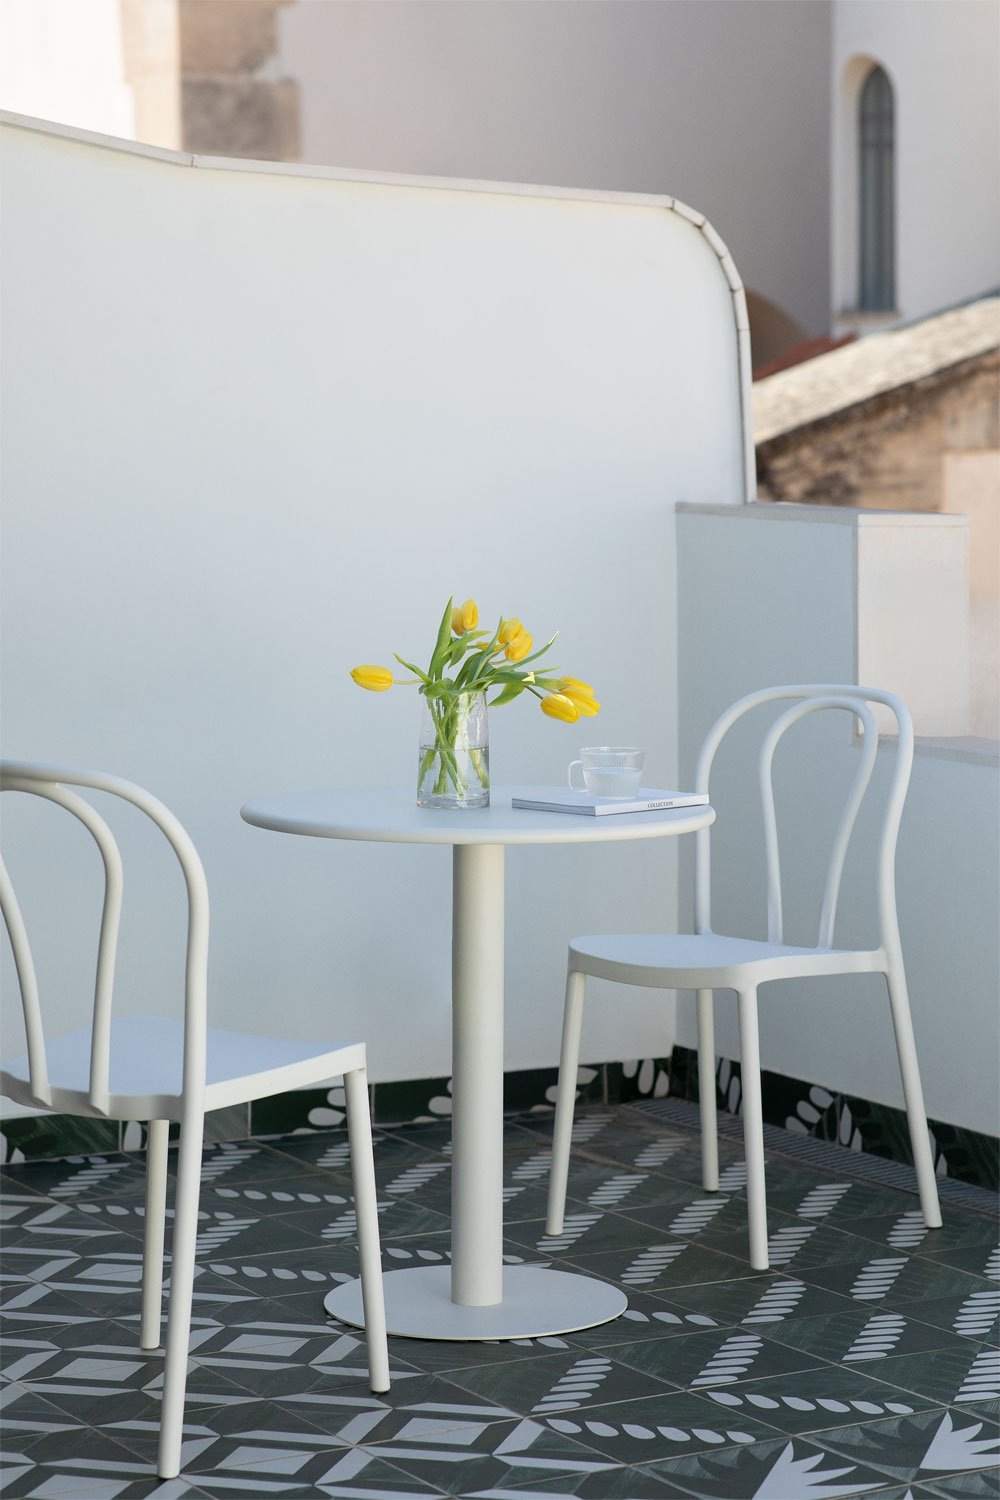 Set aus rundem Tisch (Ø70 cm) und 2 Gartenstühlen Mizzi, Galeriebild 1